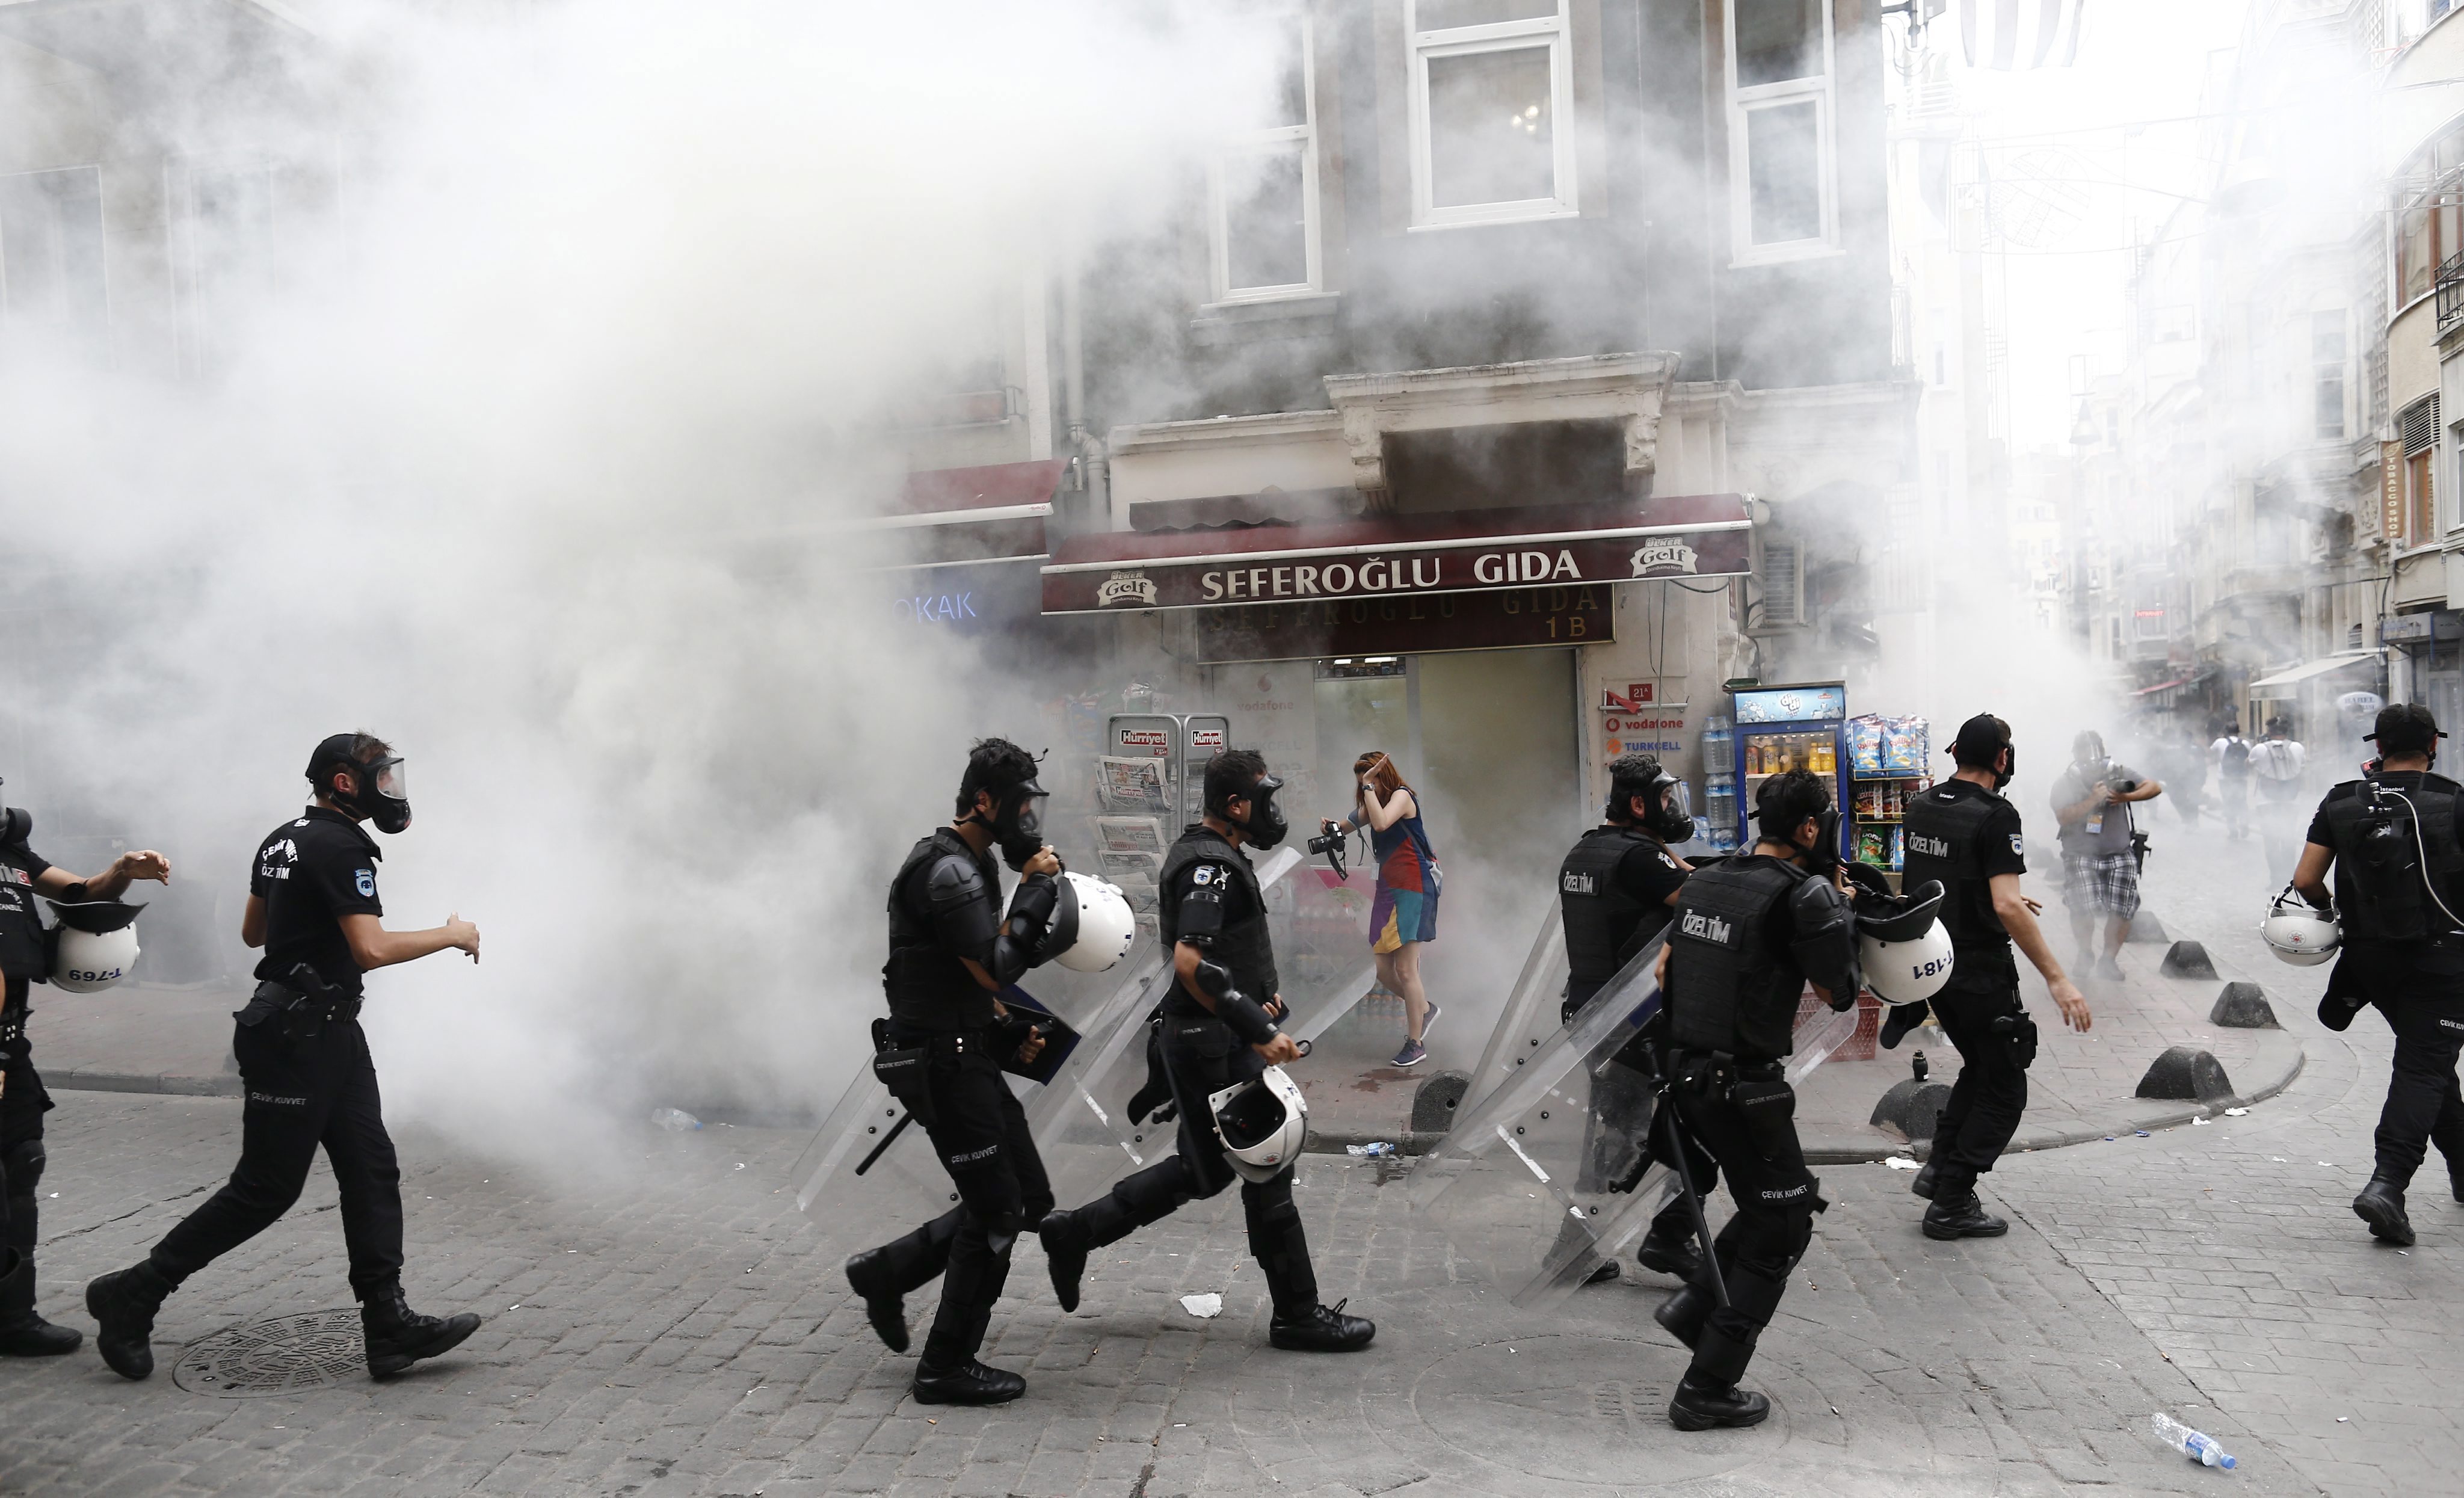 Violente la Marsul Diversitatii din Istanbul. Politia a folosit gaze lacrimogene asupra multimii: imaginile haosului creat